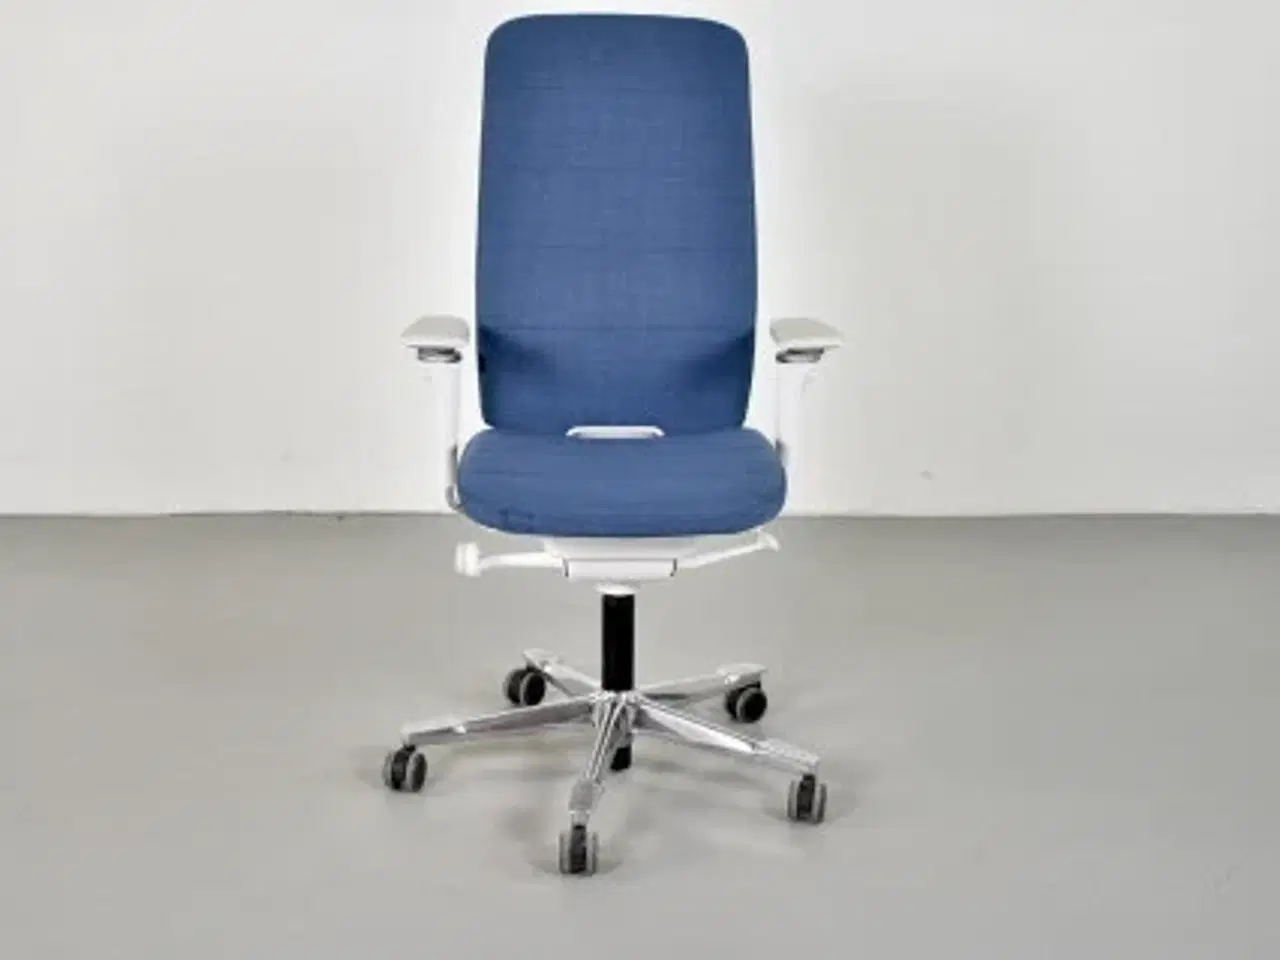 Billede 1 - Kinnarps capella white edition kontorstol med blåt polster og armlæn